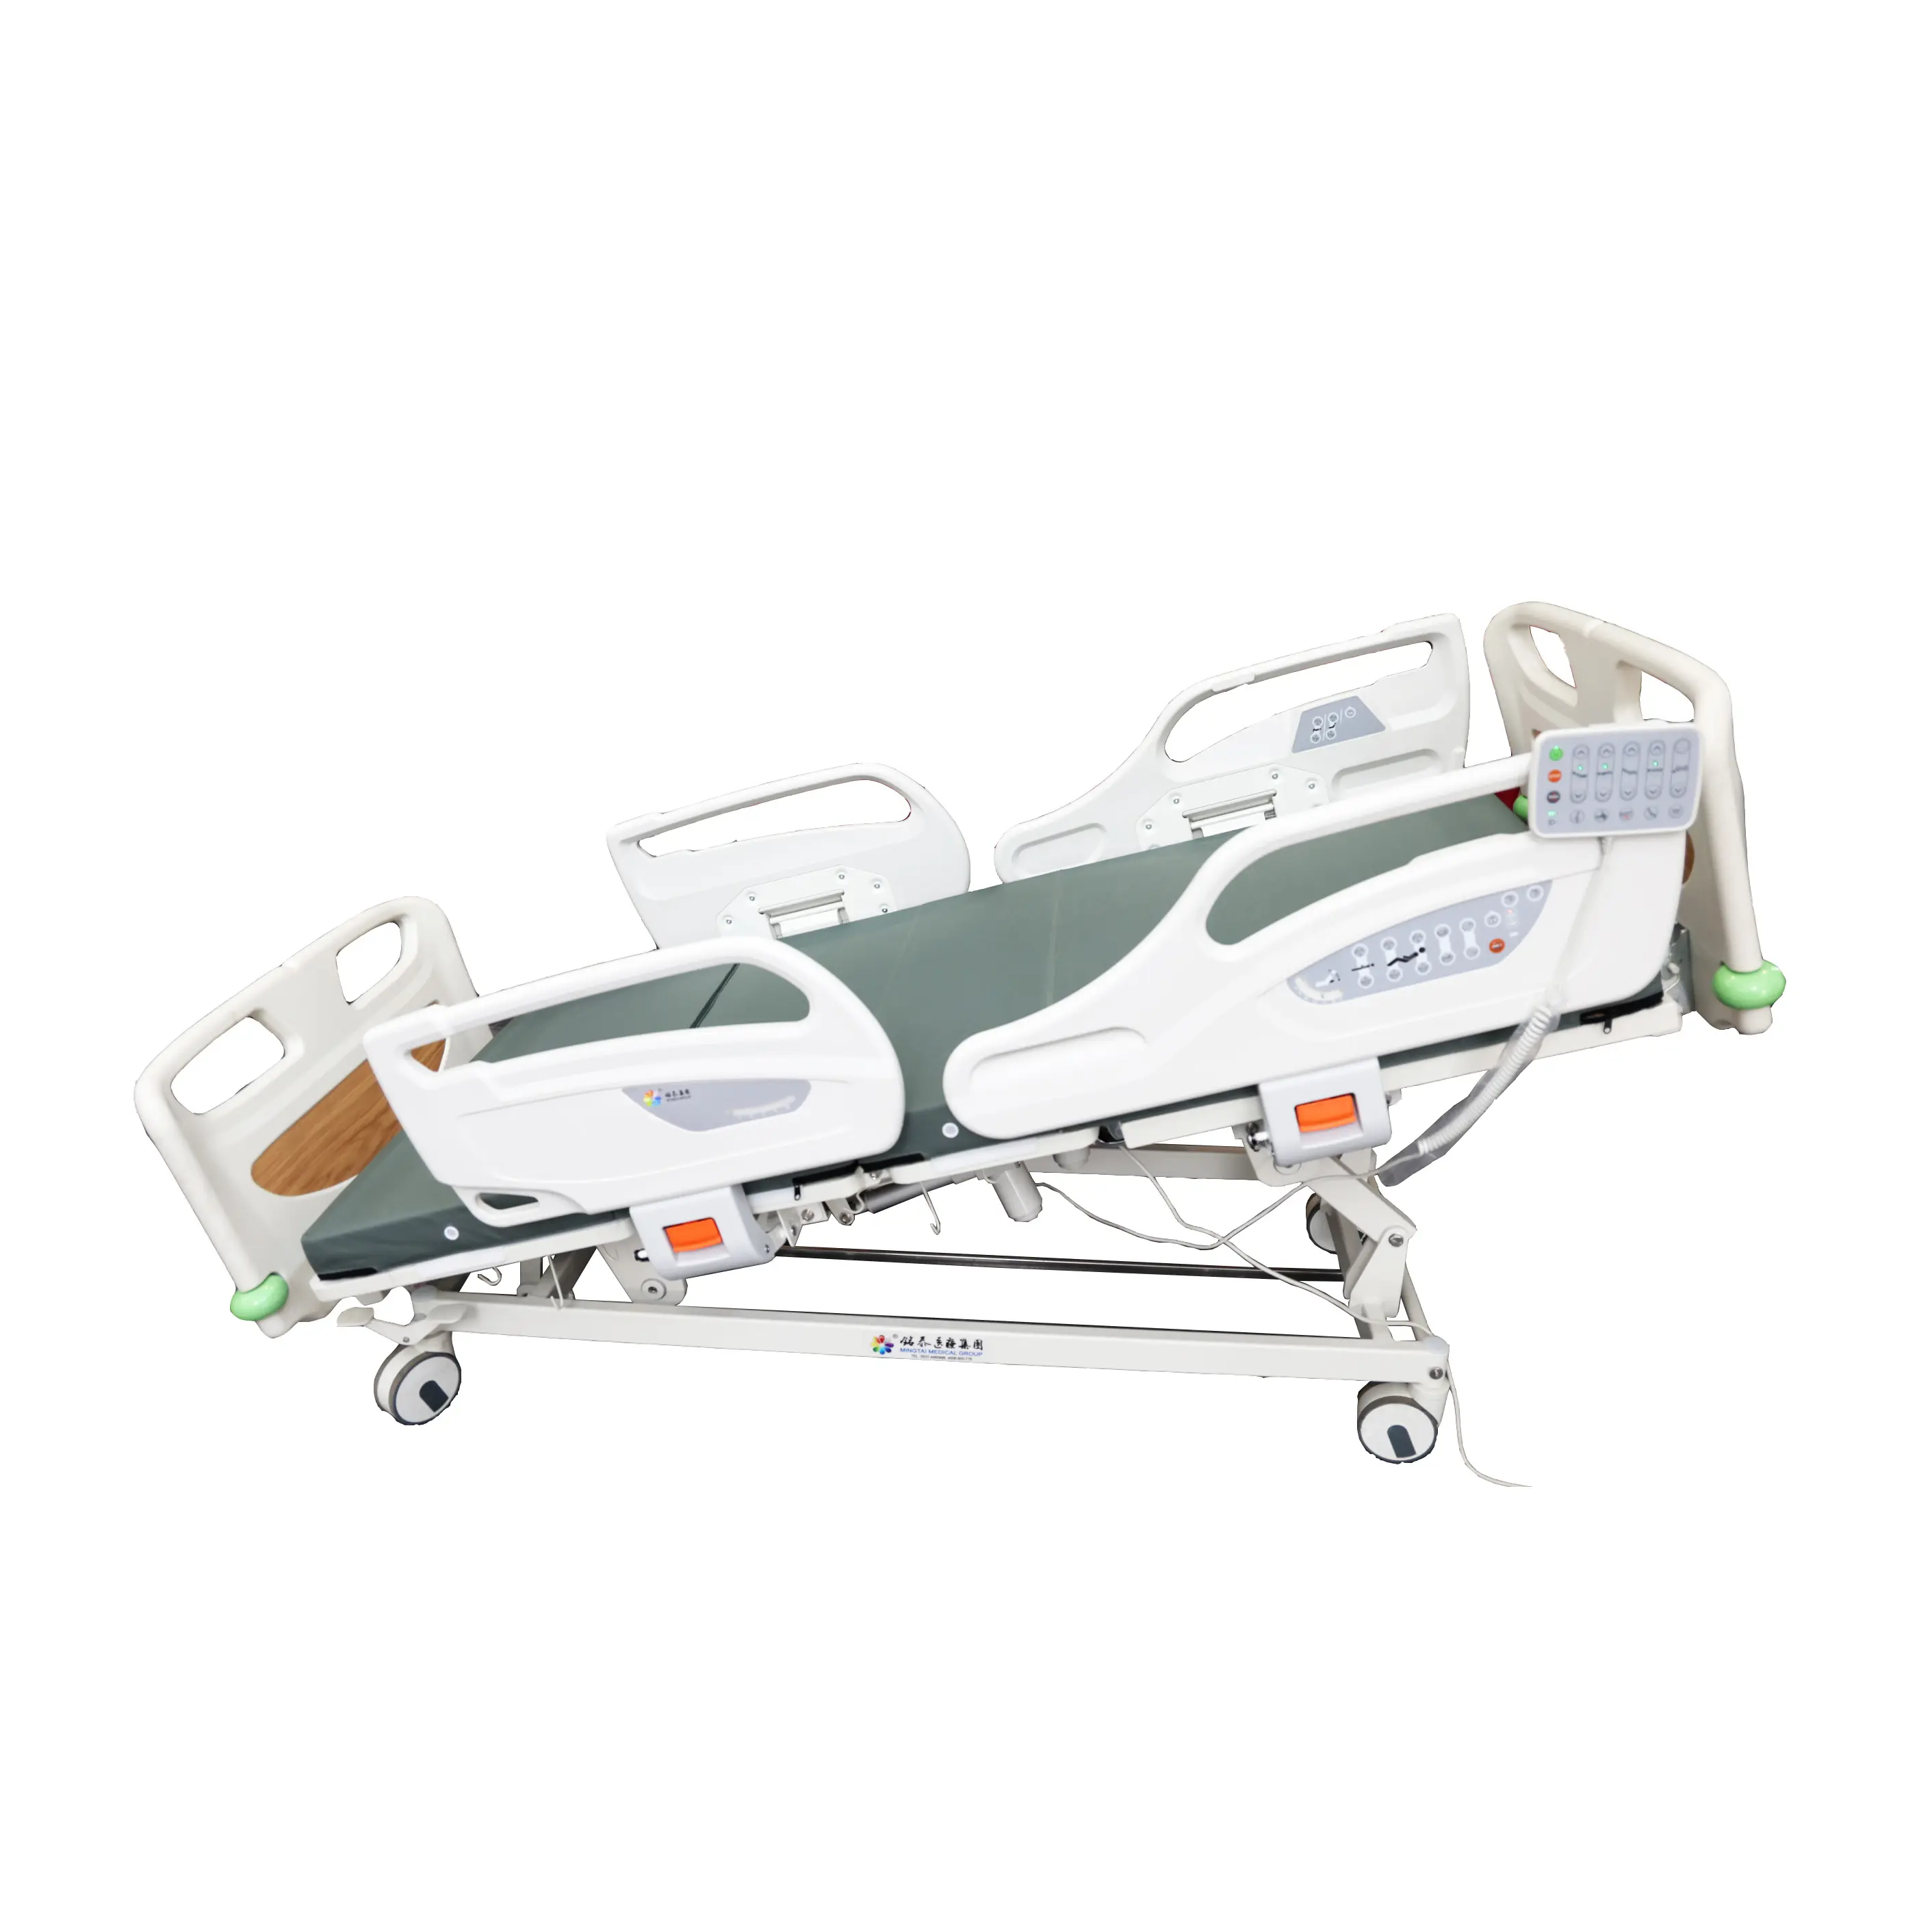 Letti d'ospedale elettrico letto medico attrezzature con buoni prezzi per i bambini e anziani